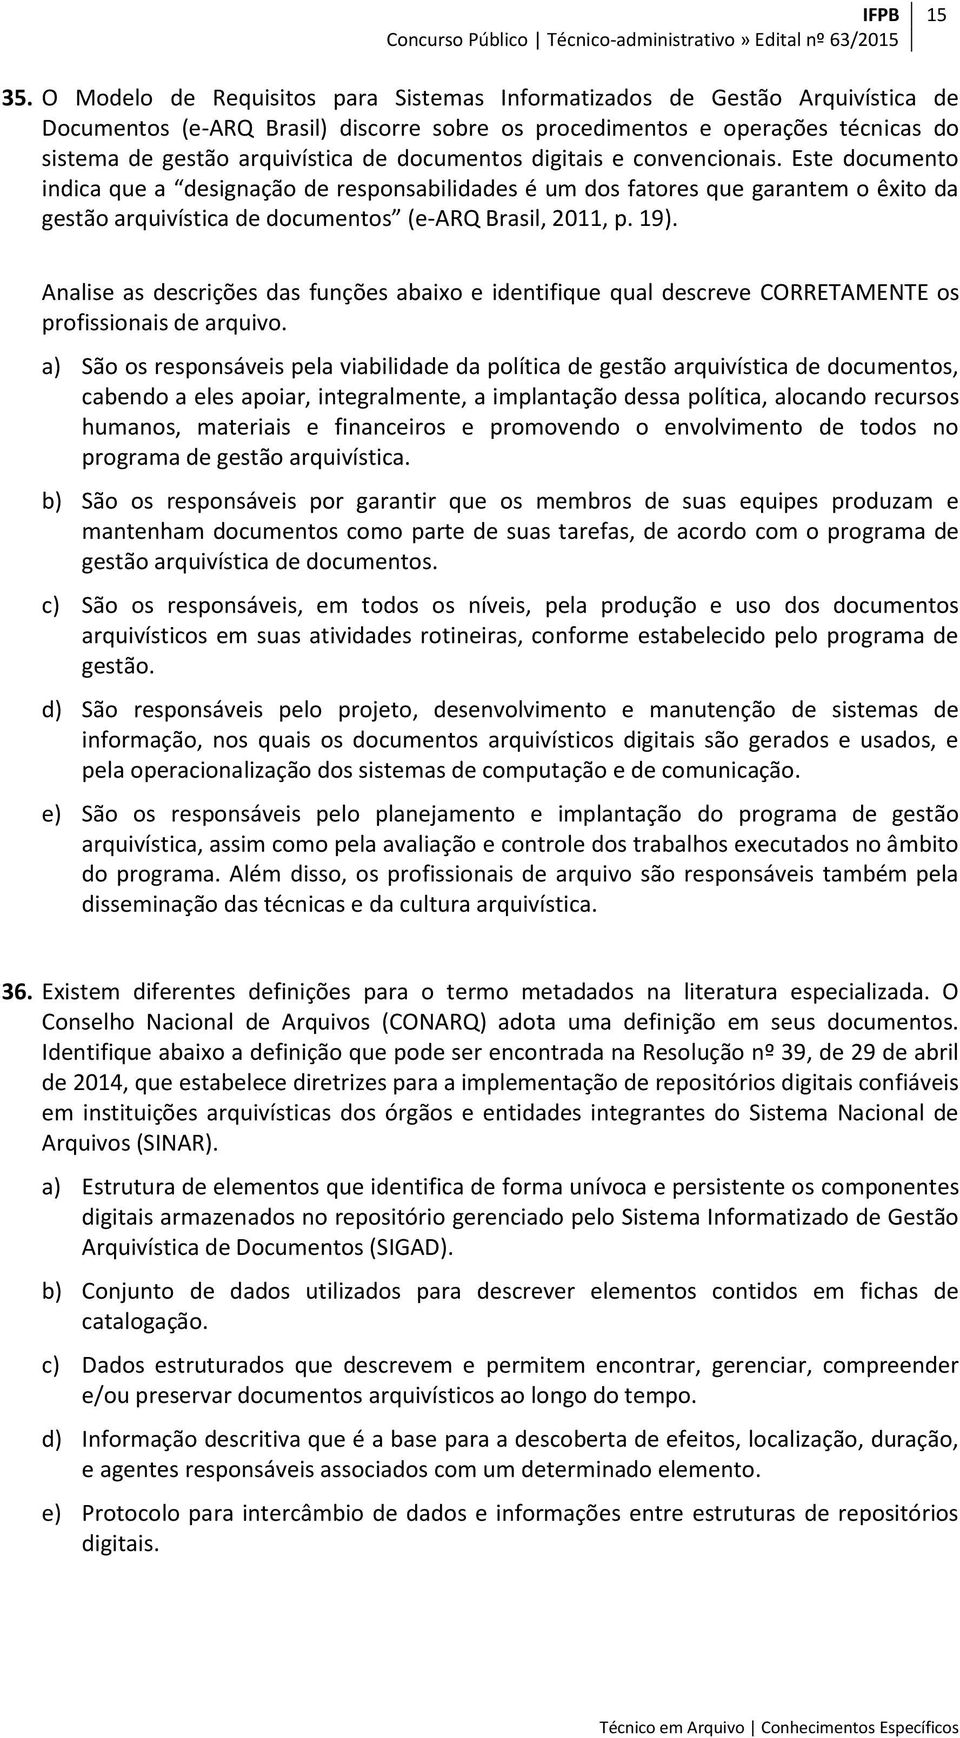 documentos digitais e convencionais. Este documento indica que a designação de responsabilidades é um dos fatores que garantem o êxito da gestão arquivística de documentos (e-arq Brasil, 2011, p. 19).